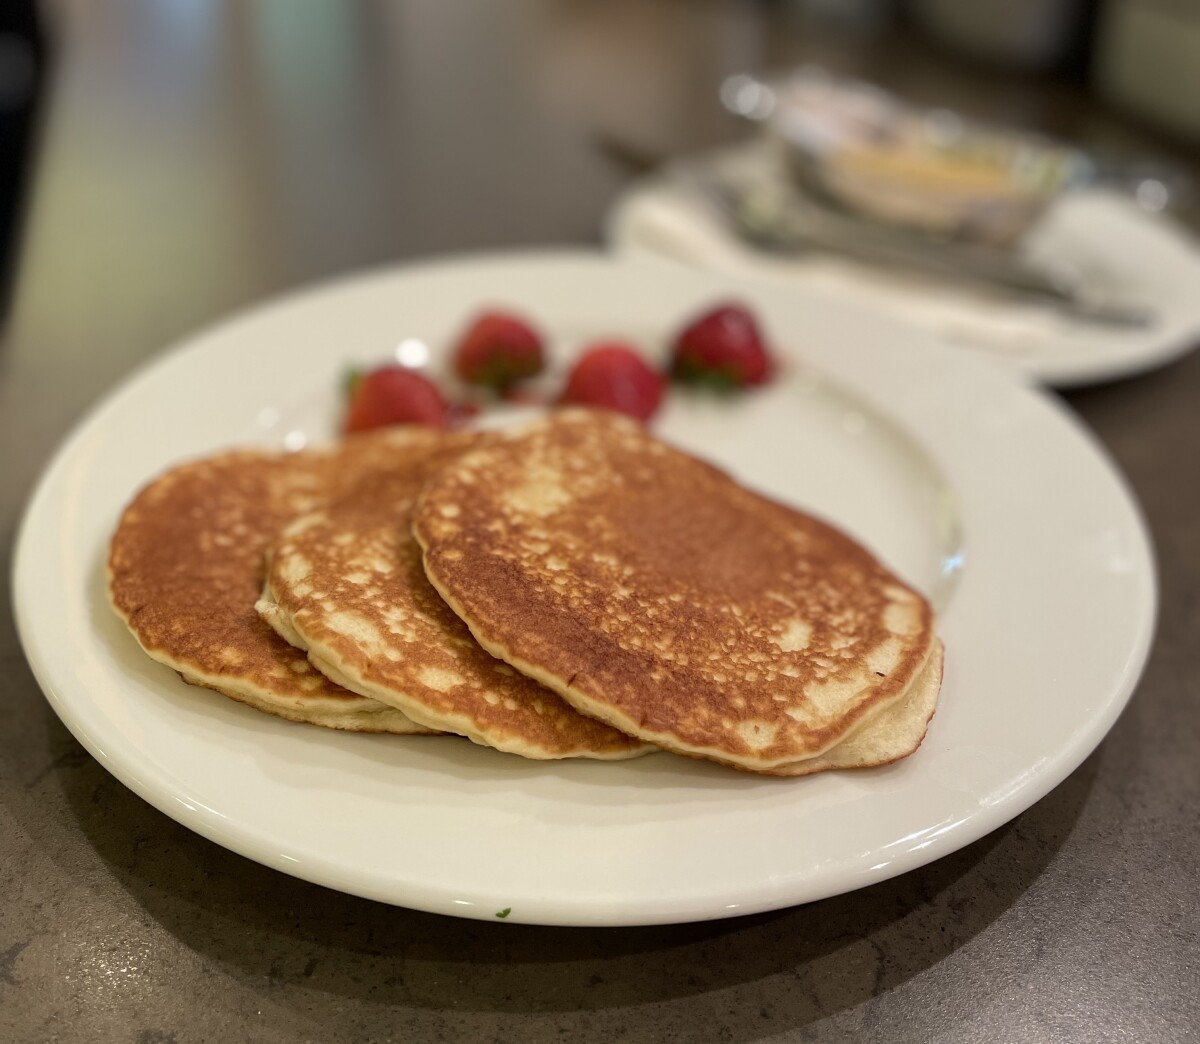 Produktbild von Pancakes mit Apfelmus